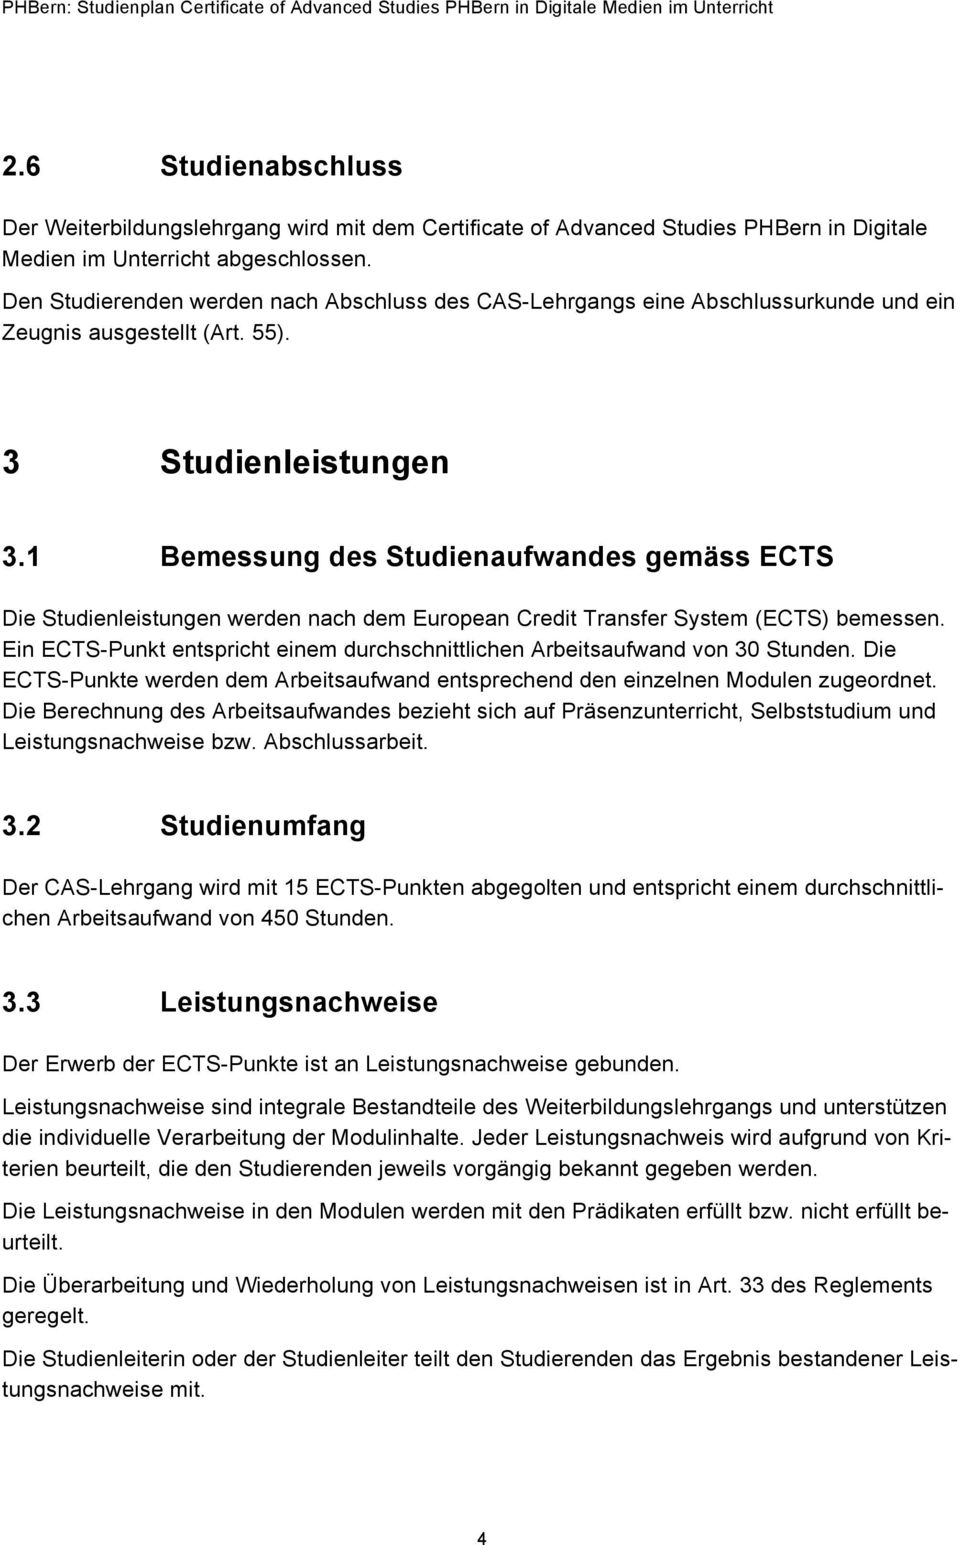 1 Bemessung des Studienaufwandes gemäss ECTS Die Studienleistungen werden nach dem European Credit Transfer System (ECTS) bemessen.